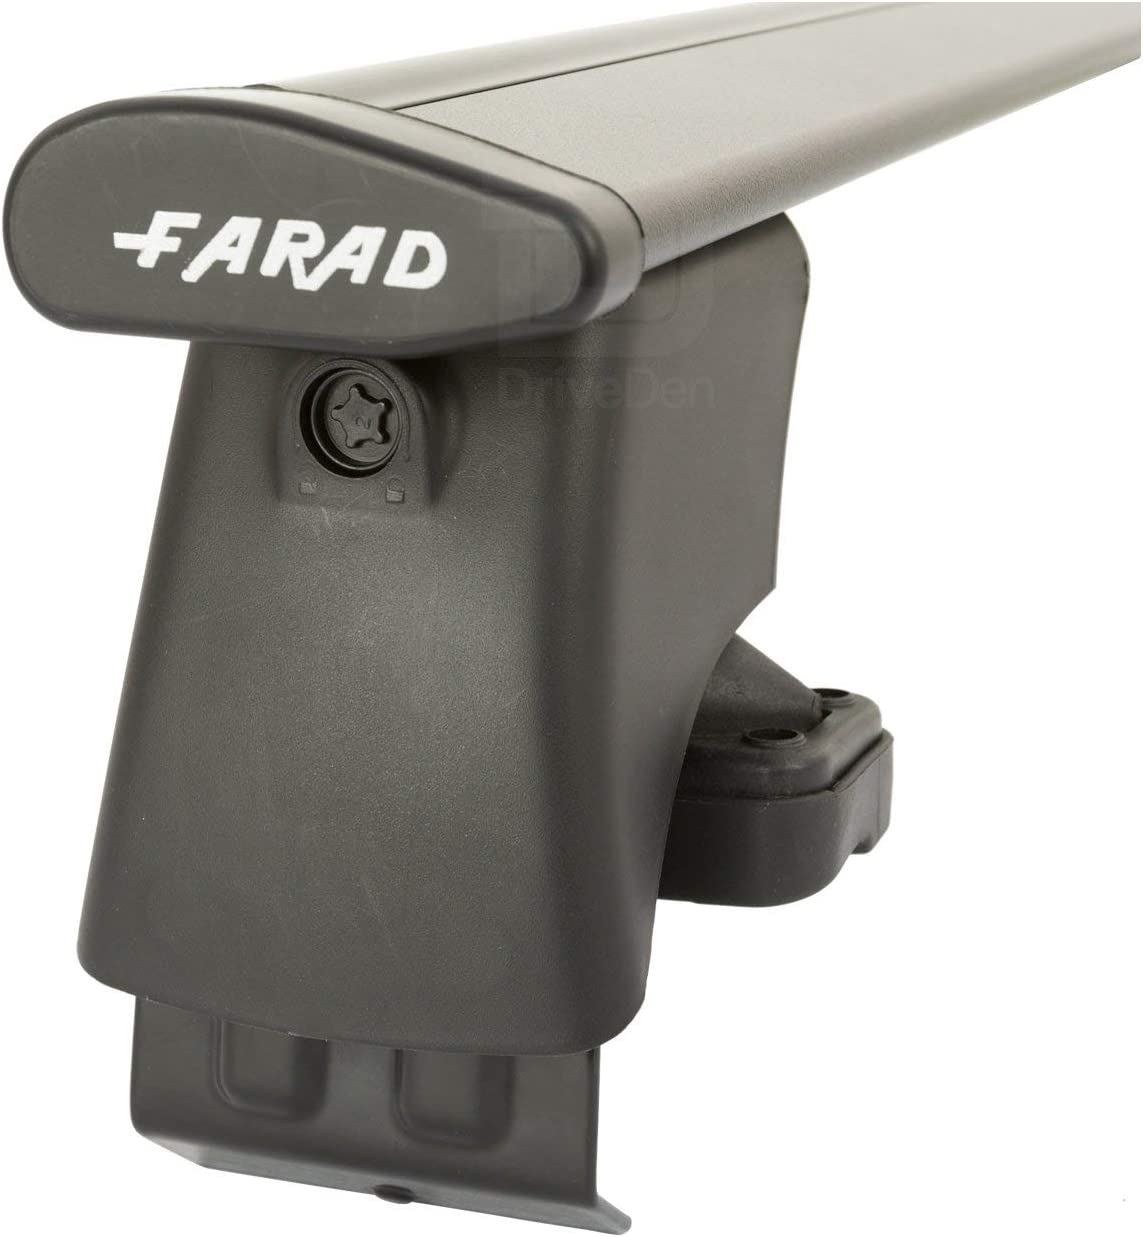 FARAD-Kit H2 per barre portatutto - Peugeot 107 2005-2014 (senza corrimano)